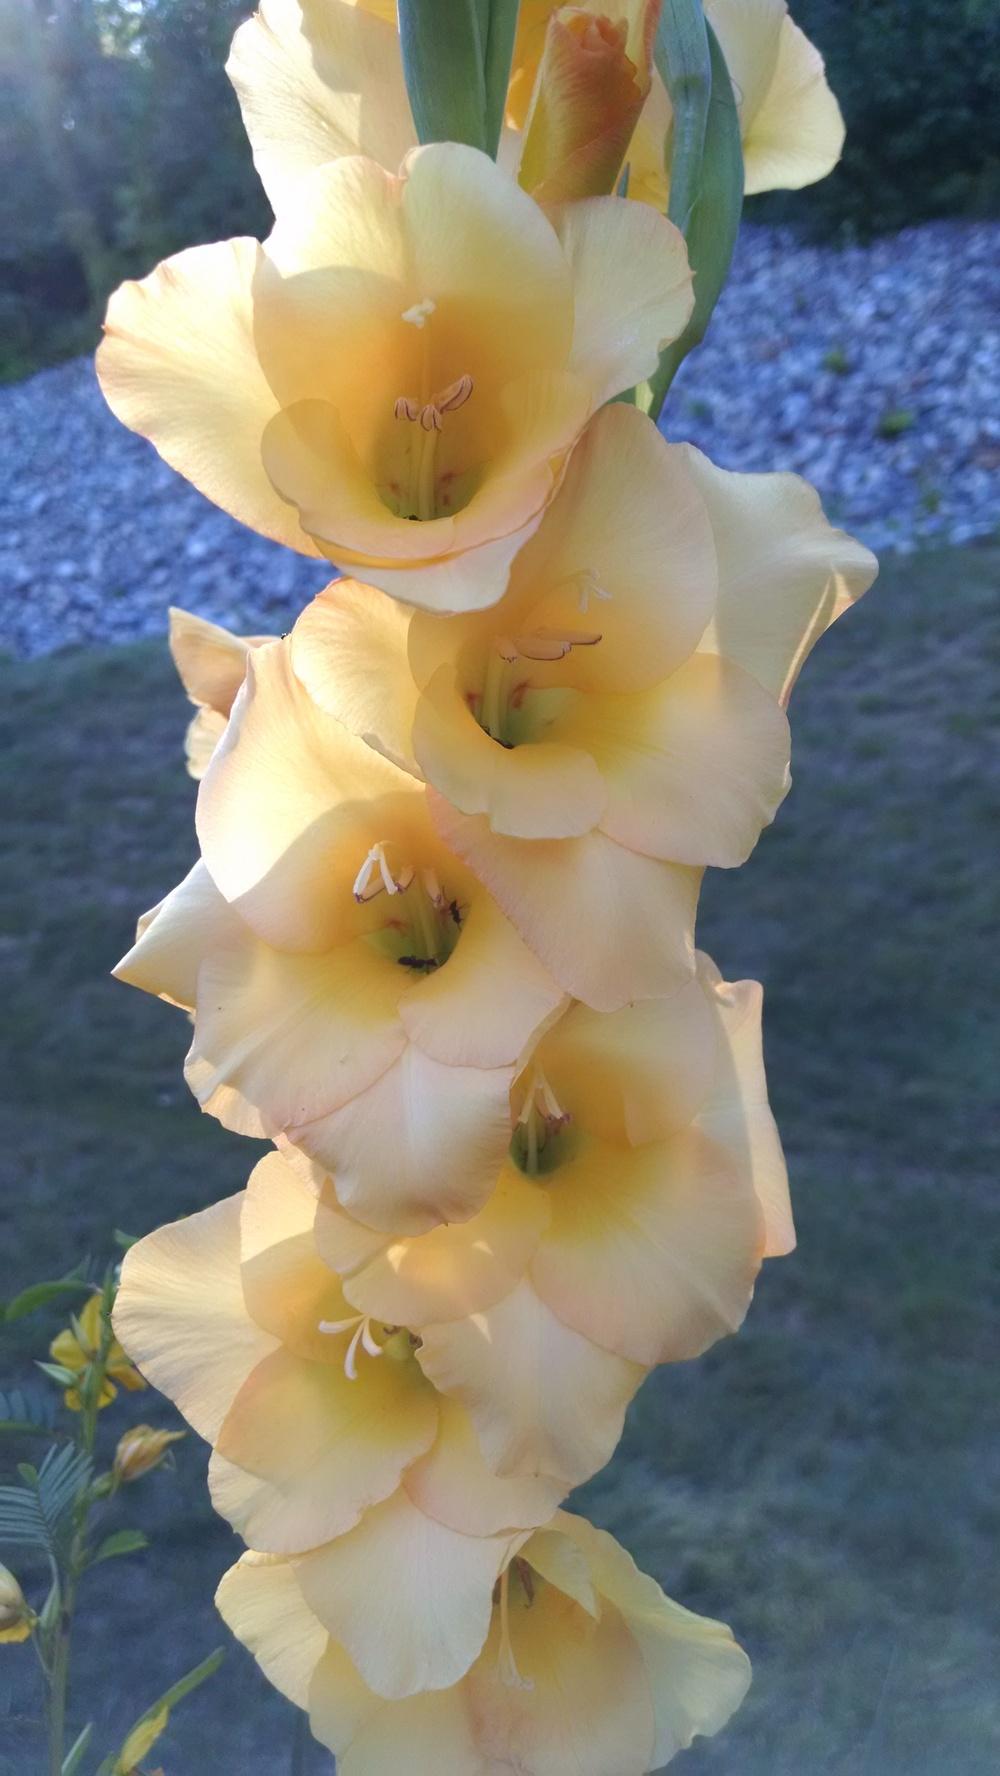 Photo of Gladiola (Gladiolus) uploaded by joannakat